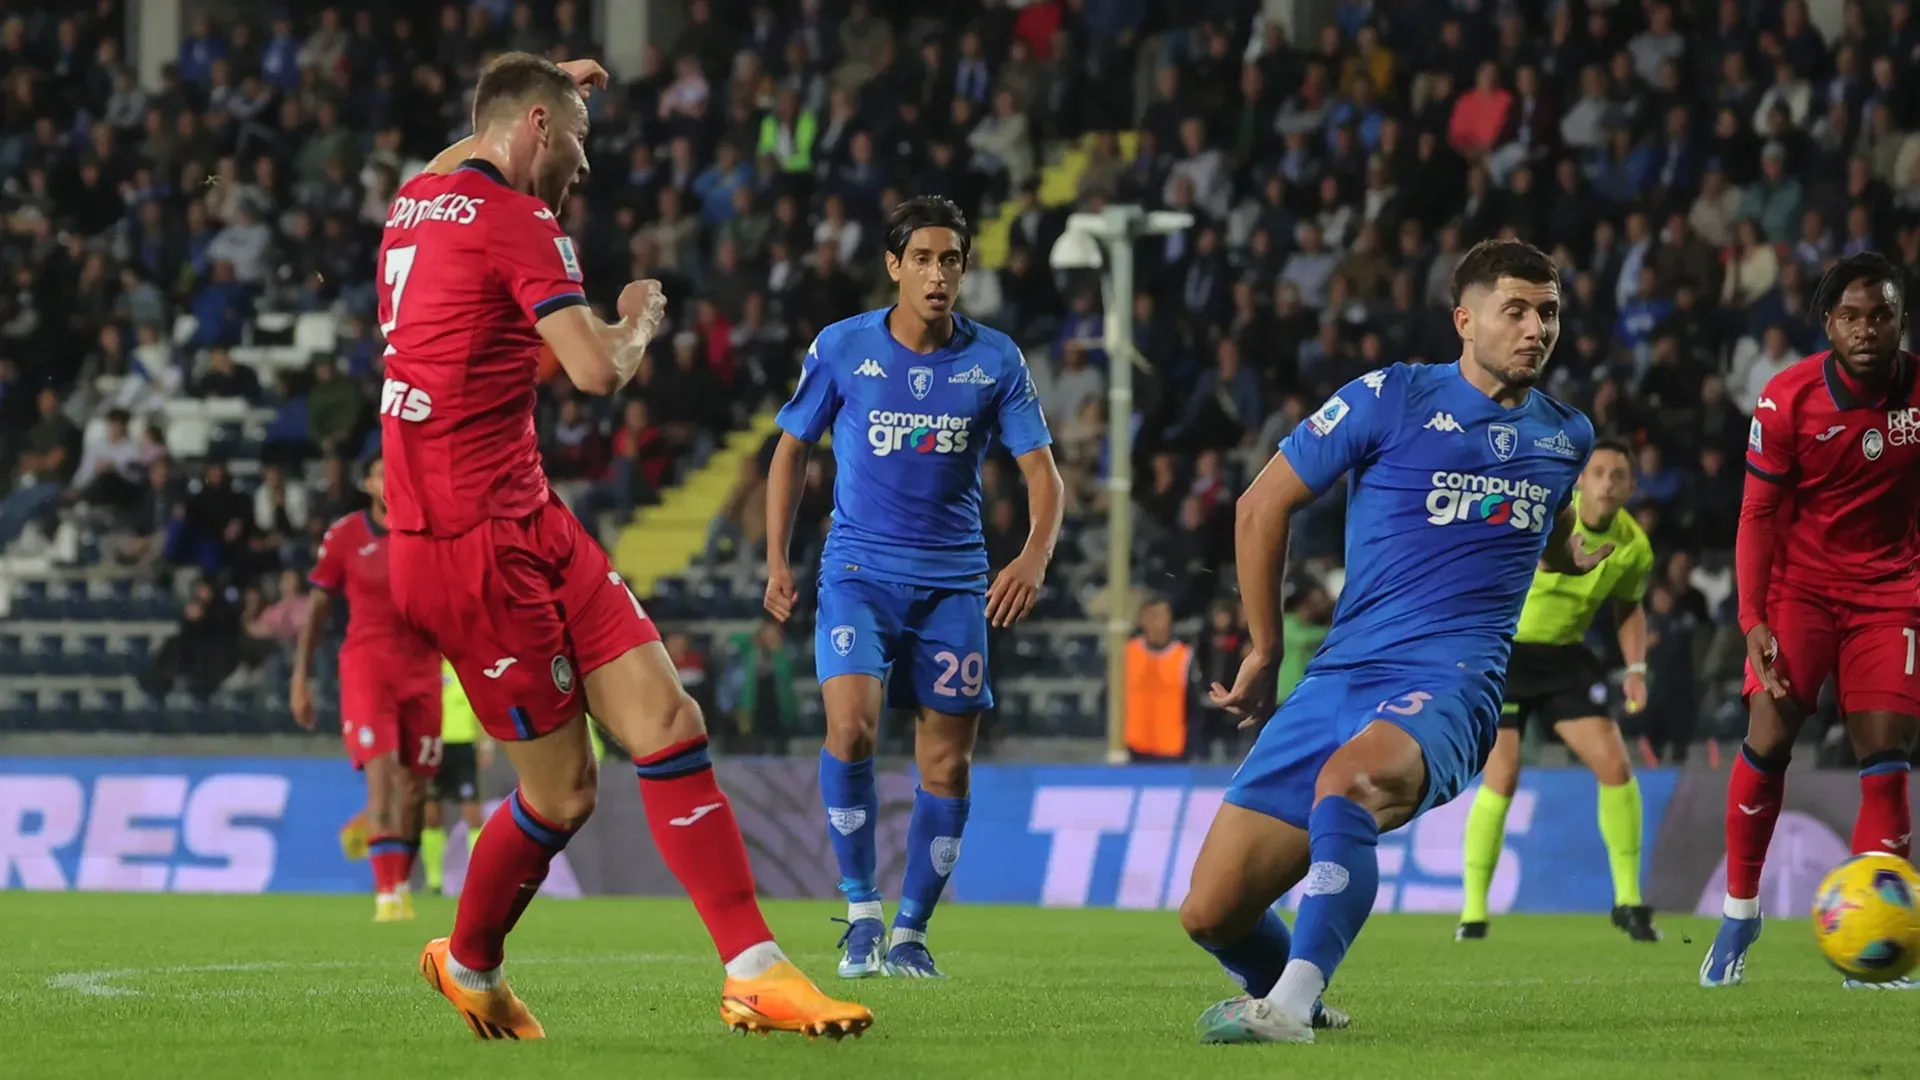 LIVE Atalanta-Empoli 1-0: fine primo tempo, decide Pasalic dal dischetto